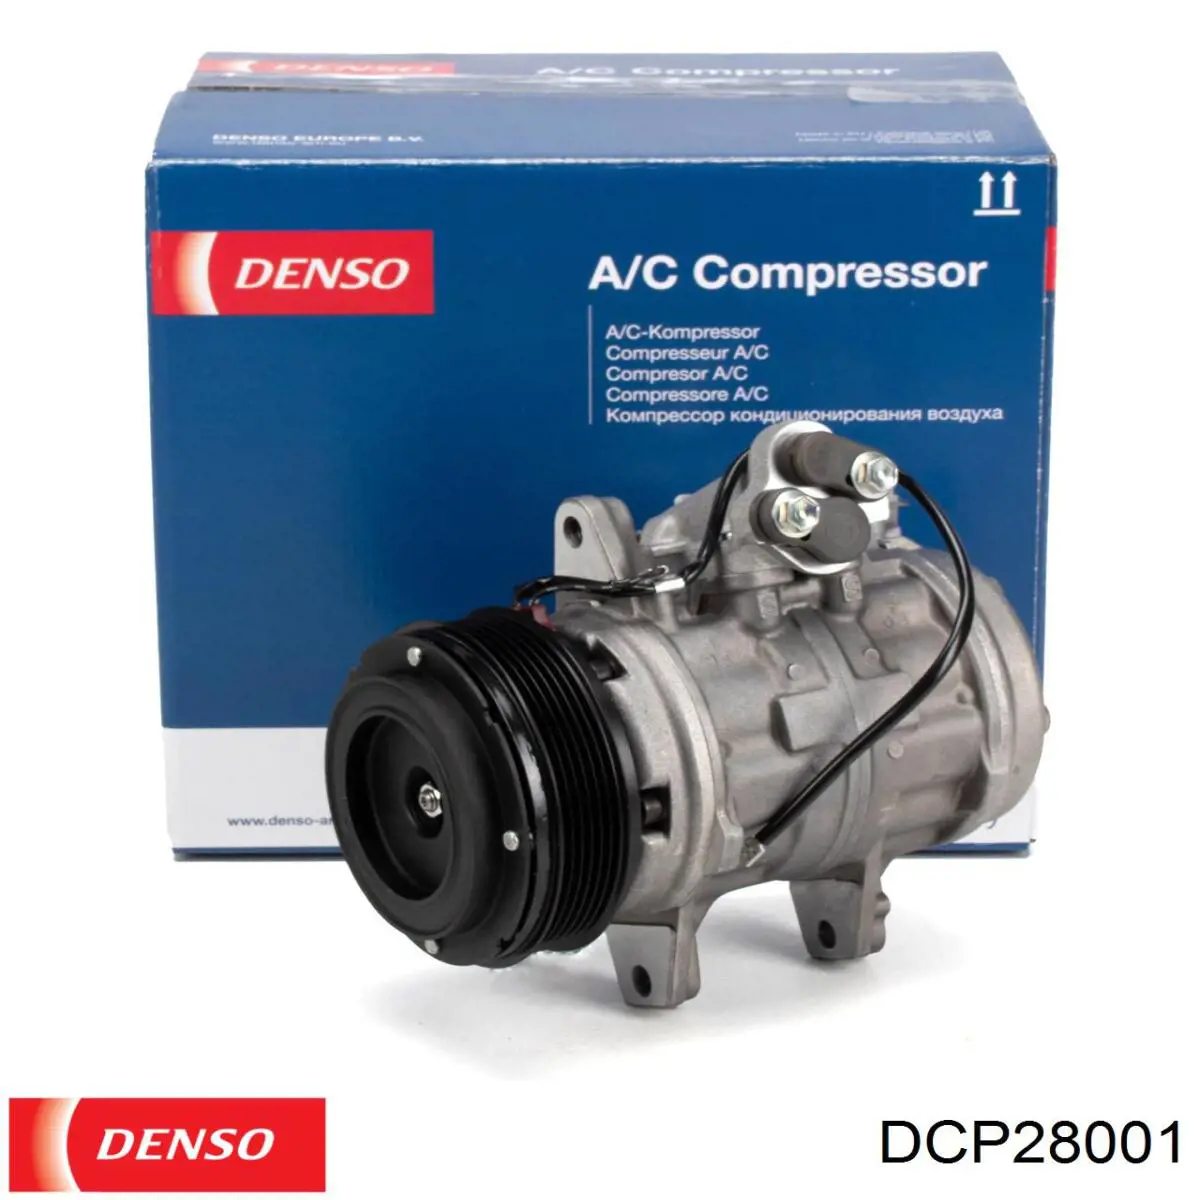 Compresor de aire acondicionado DCP28001 Denso